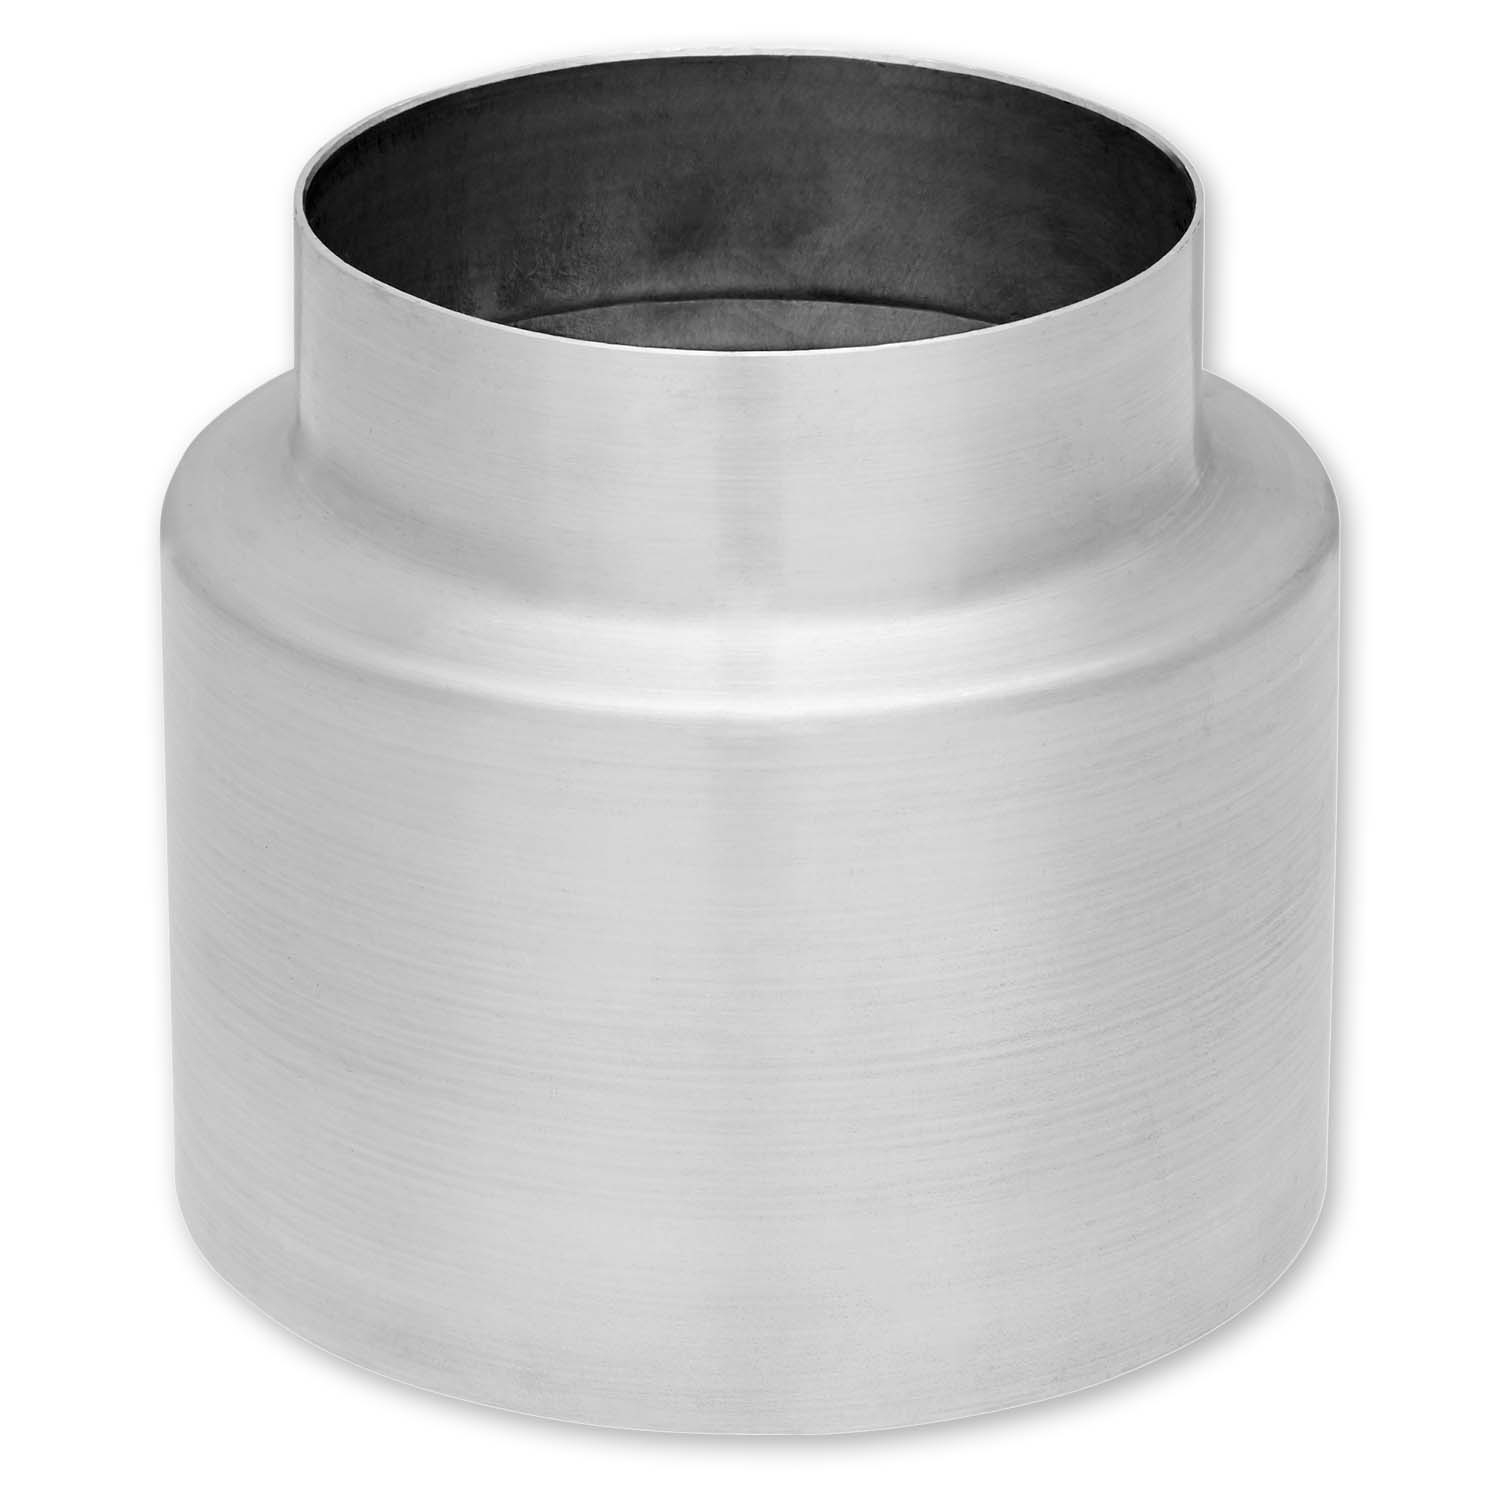 Zambelli KG-Rohr Blende 100/132 mm, Titanzink, für Kanalgrundrohr Verblendung